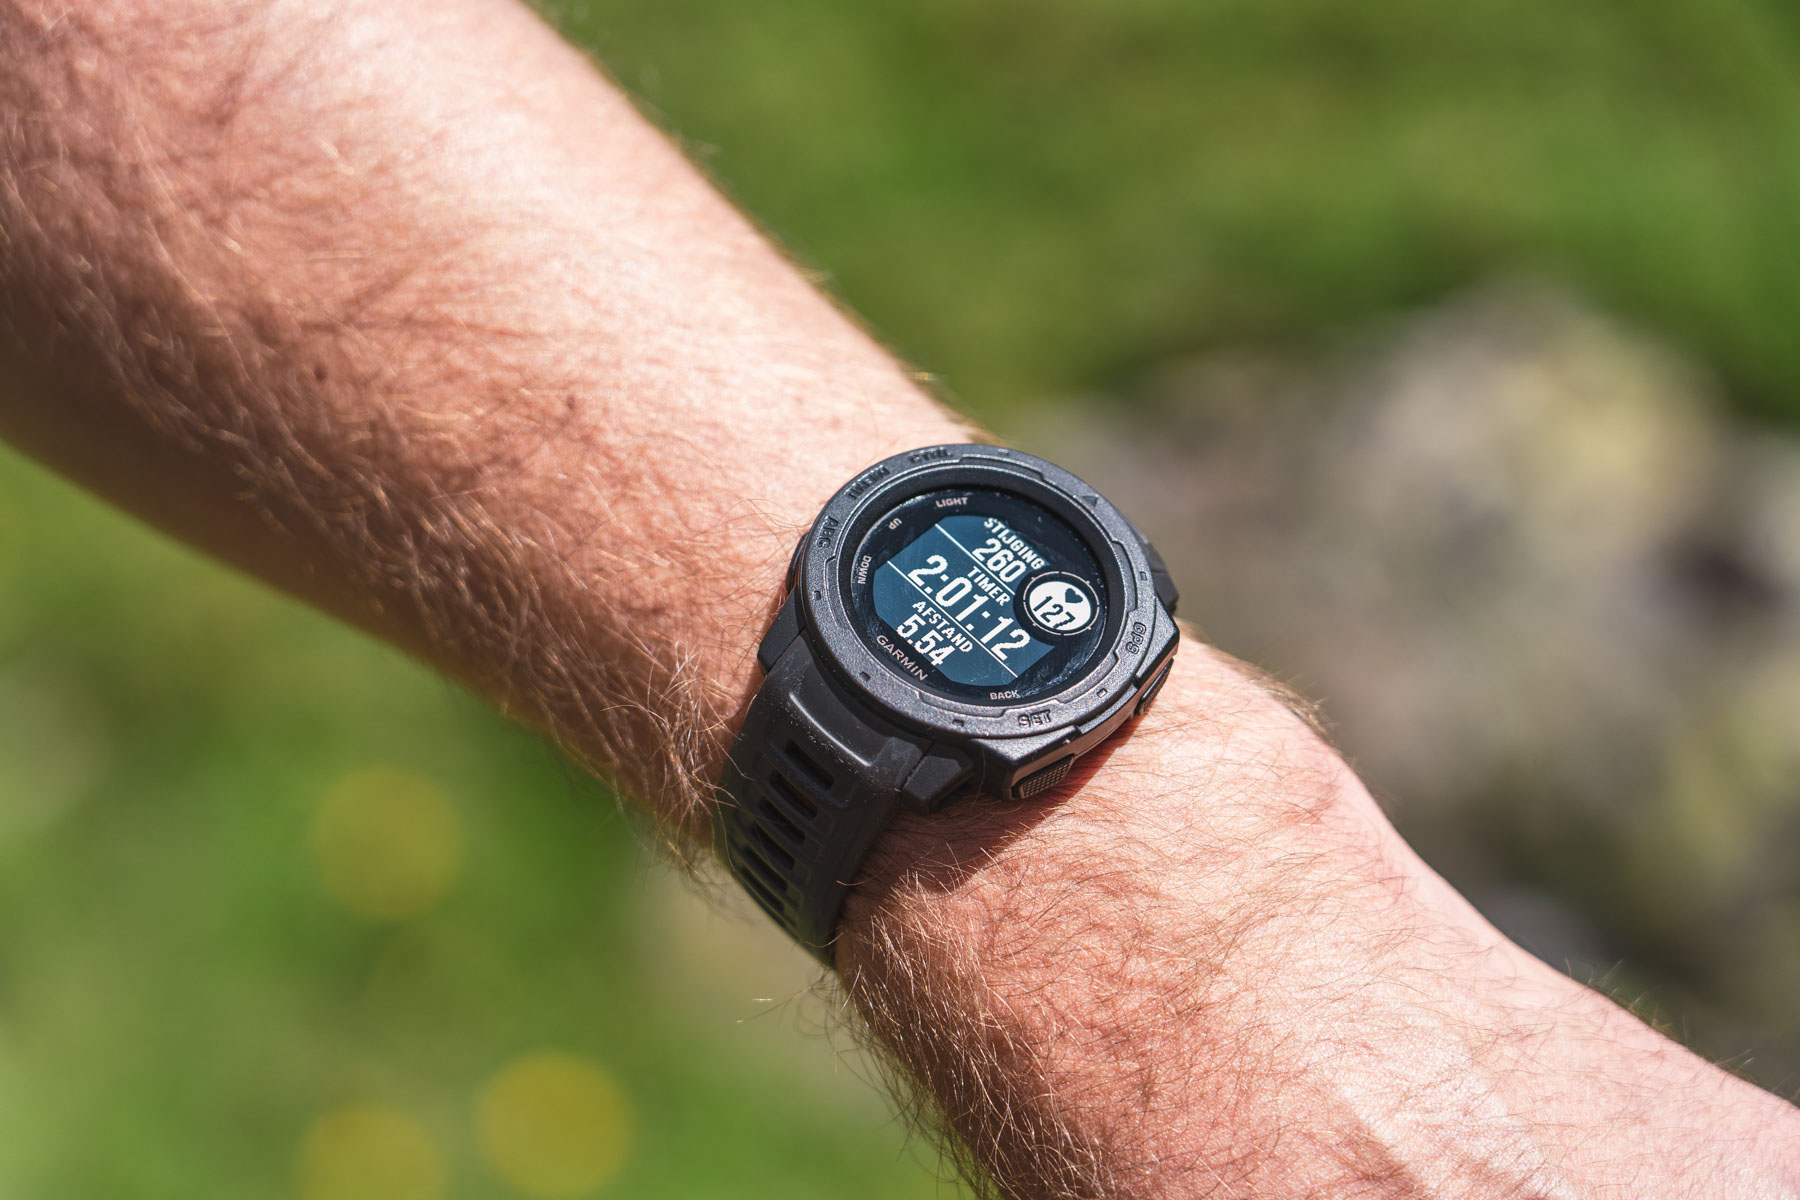 schudden verstoring Om toestemming te geven Wandelen met een GPS-horloge of smartwatch, tips en beste keus -  Bergwandelroutes.nl - Tips voor wandelen in de bergen